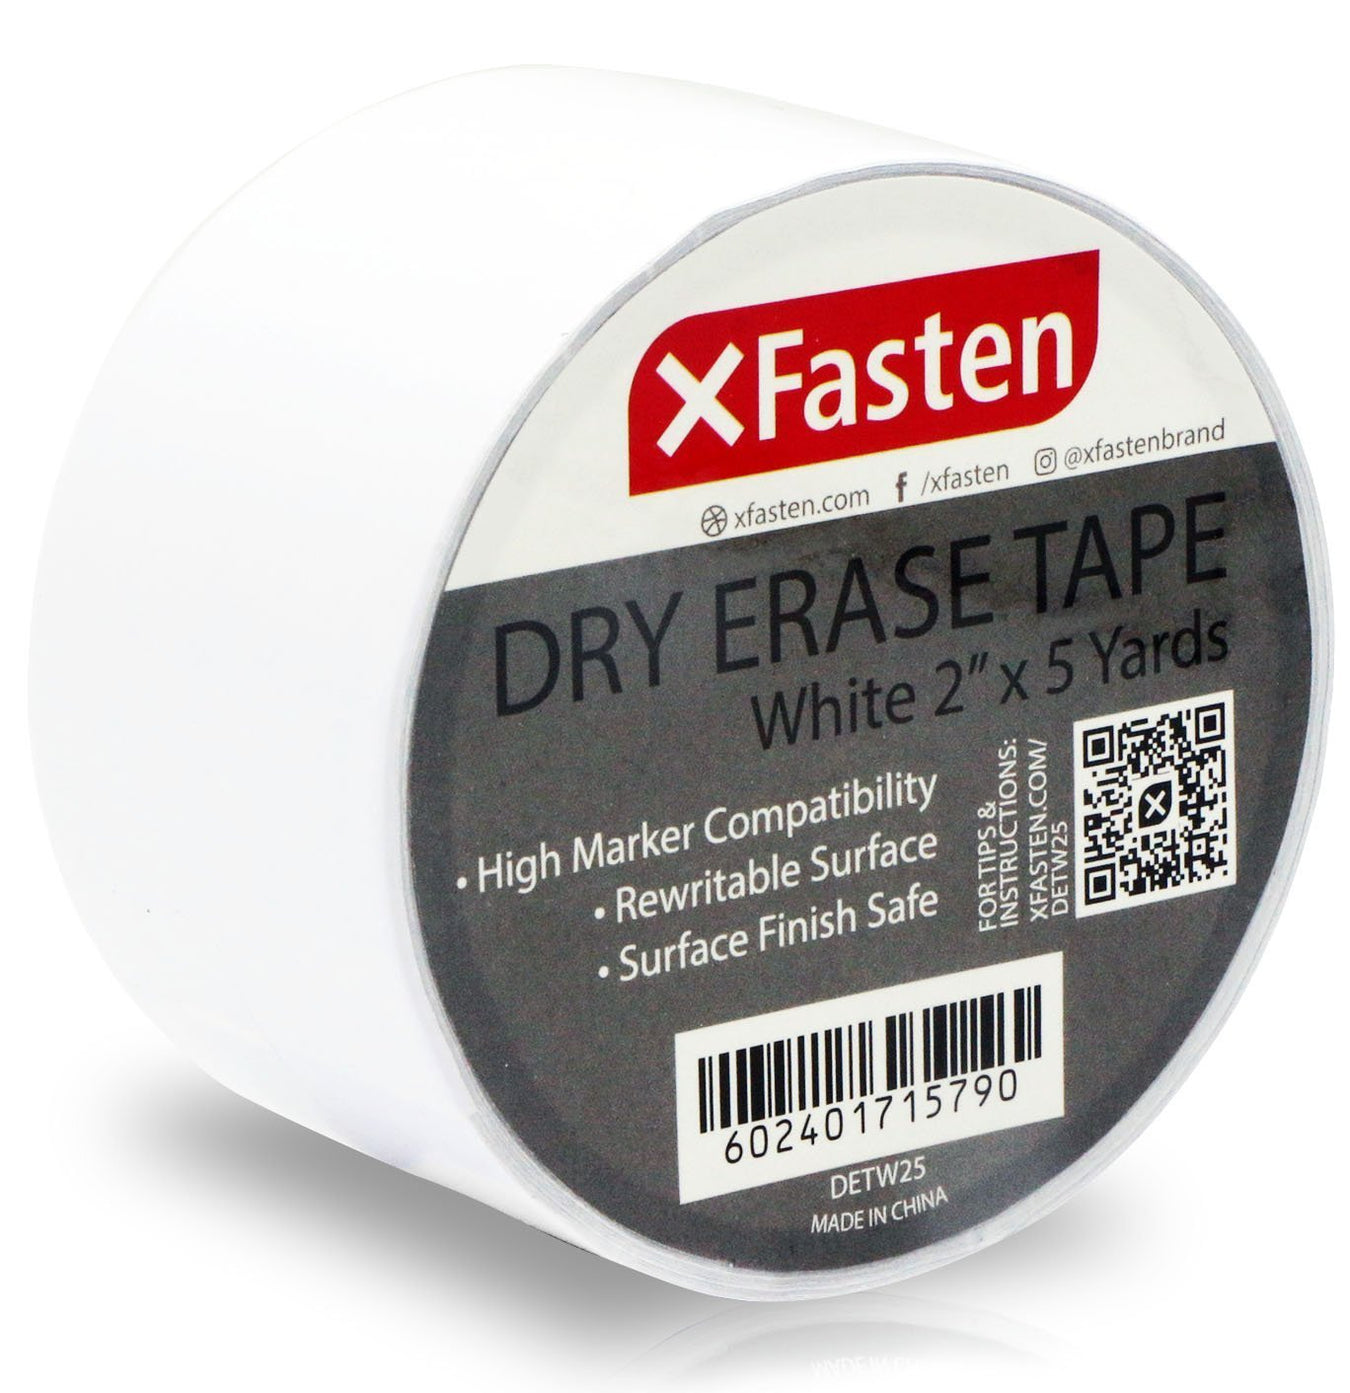 Dry Erase Tape - XFasten